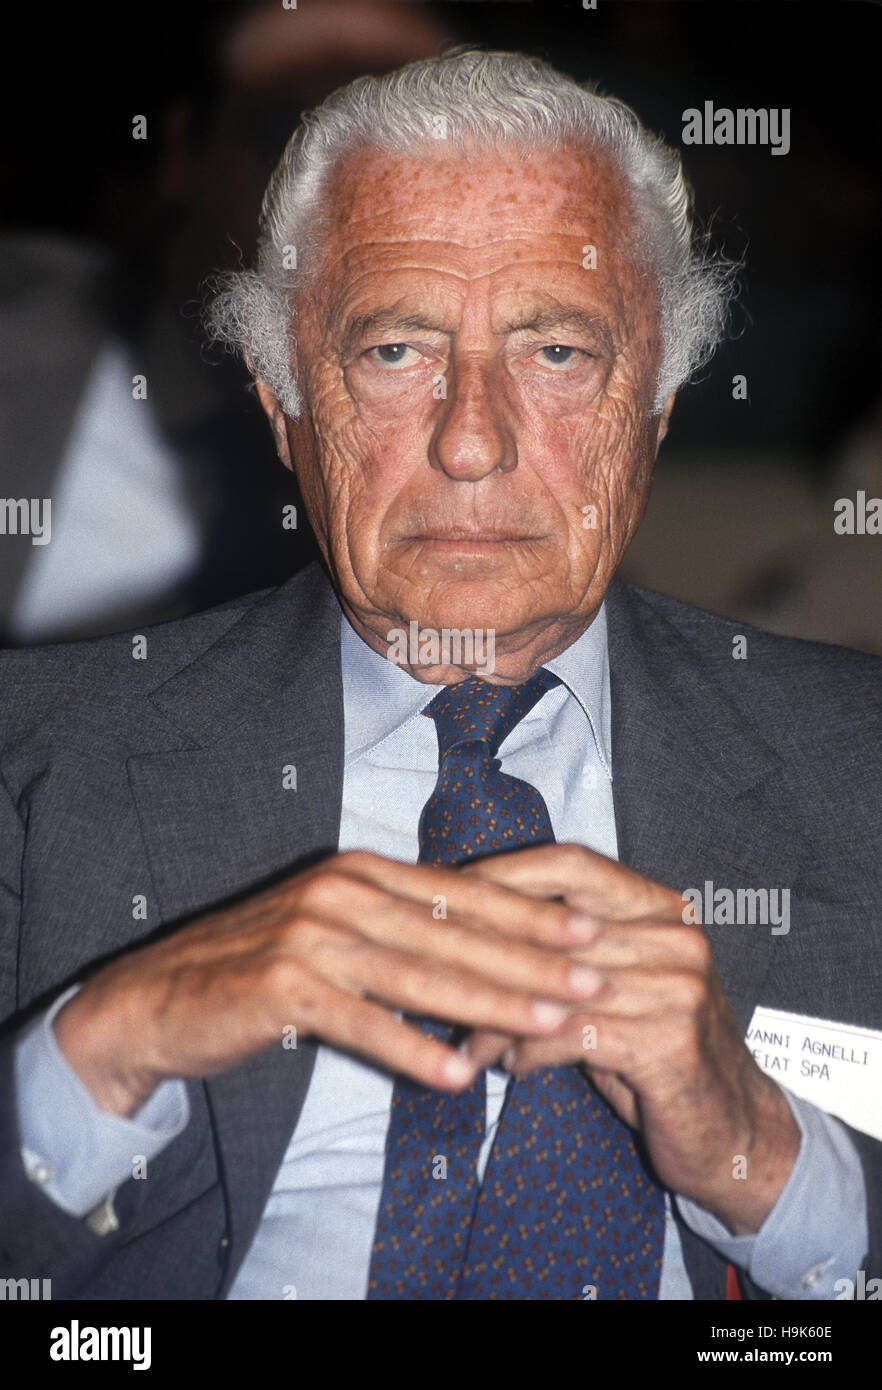 Giovanni Agnelli, detto "Gianni" e noto anche come avvocato (Torino, 12 marzo 1921 - Torino, Gennaio 24, 2003), è stato un imprenditore italiano e del politico principale azionista e direttore della FIAT al vertice, come pure un senatore a vita. Foto Stock